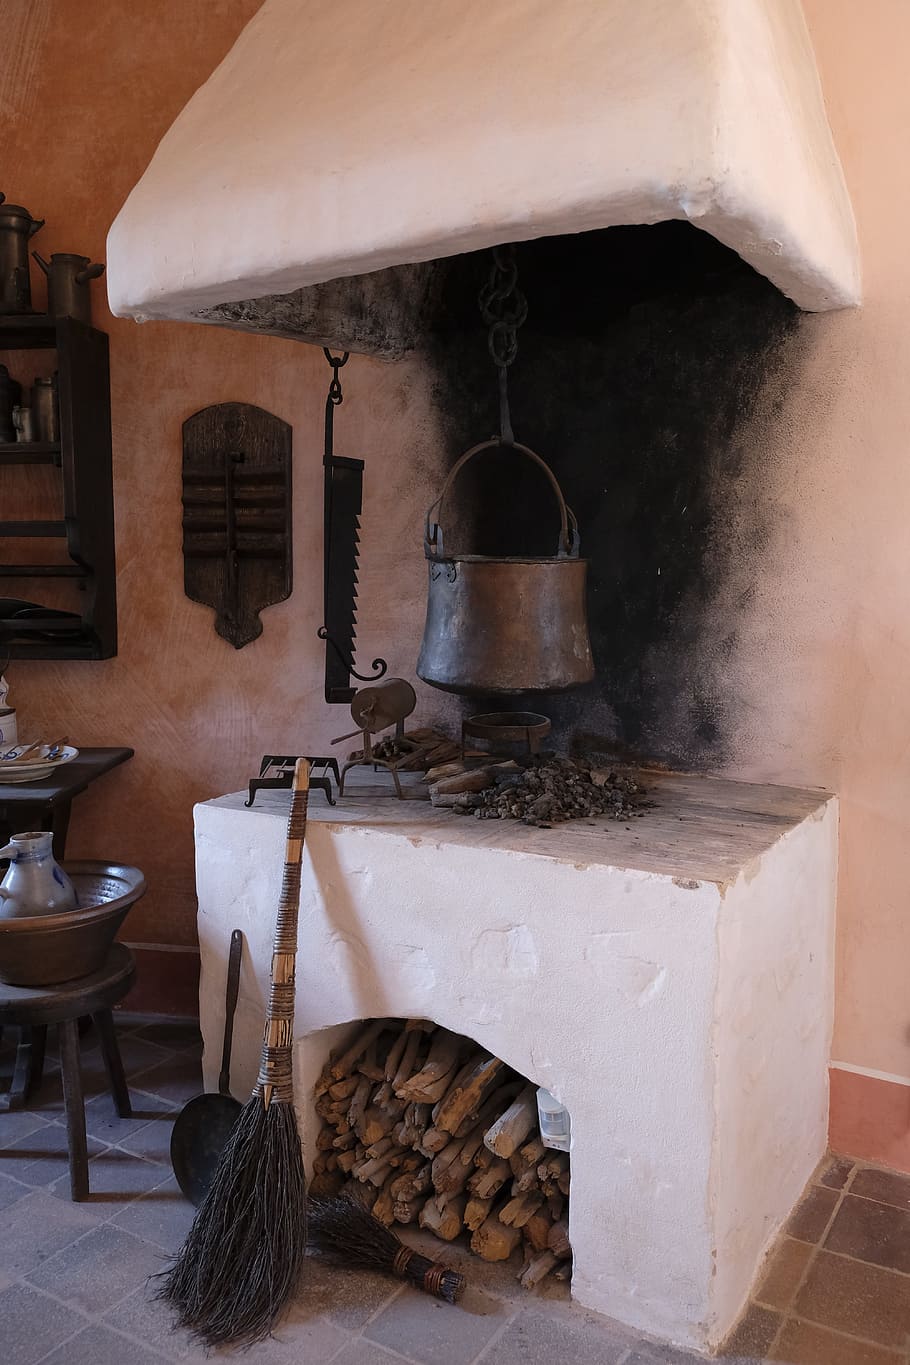 cocinero, zona de cocción, chimenea, horno, caldera, olla, antiguo, históricamente, caldera de agua, comida y bebida